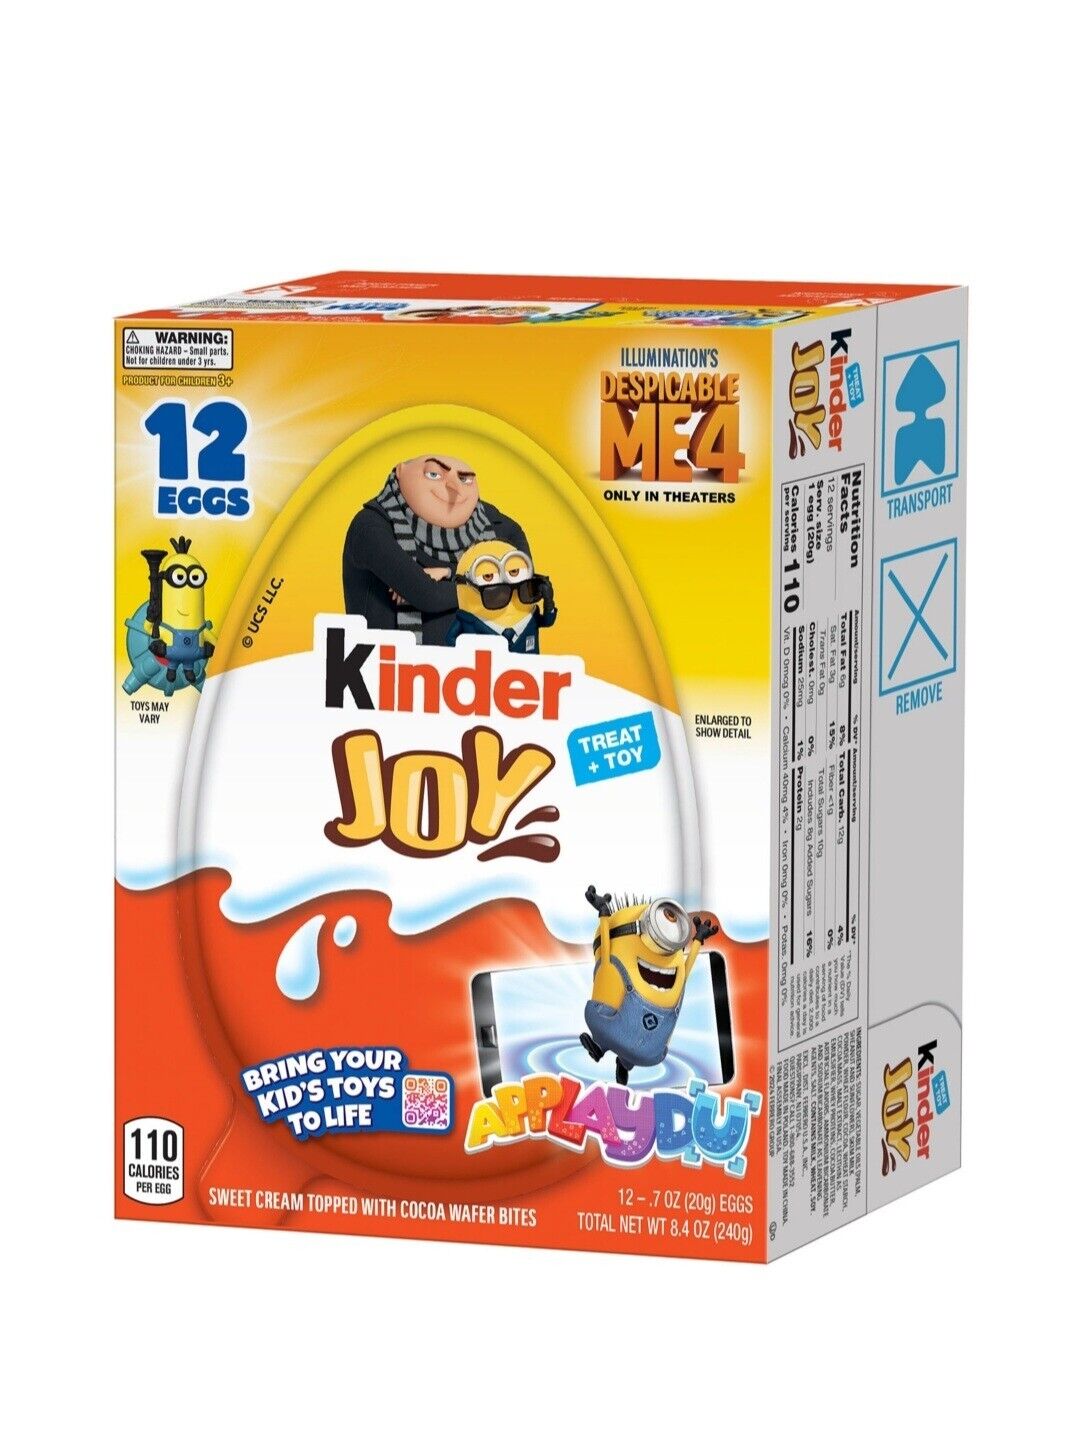 Kinder Joy Chocolate Surprise Minions Egg. 12-.7 0Z (20g) EGGS DESPICABLE ME 4